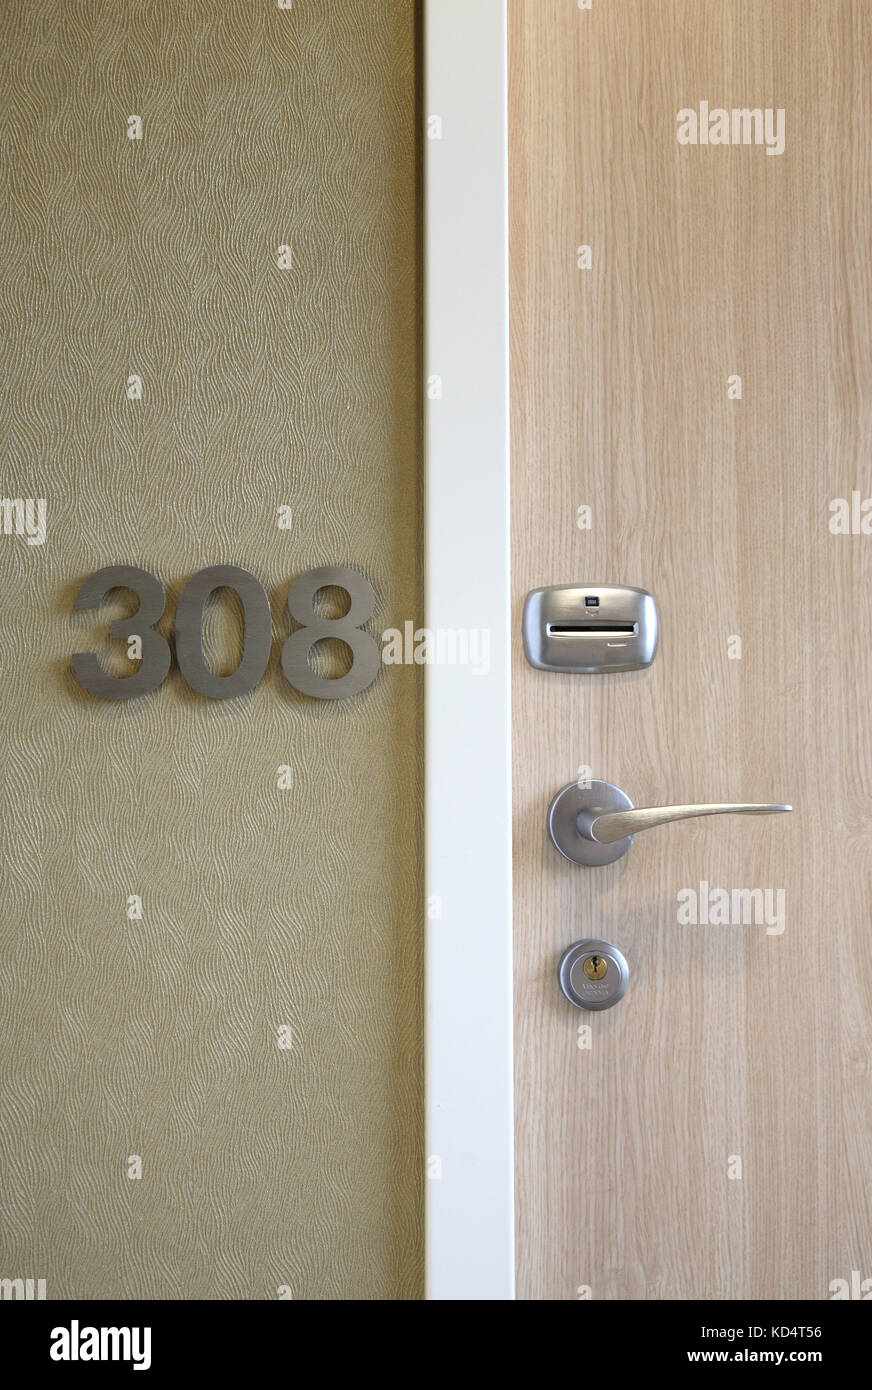 Vue rapprochée d'une porte d'hôtel moderne avec numéro de chambre en aluminium fixé au mur et serrure à carte Banque D'Images